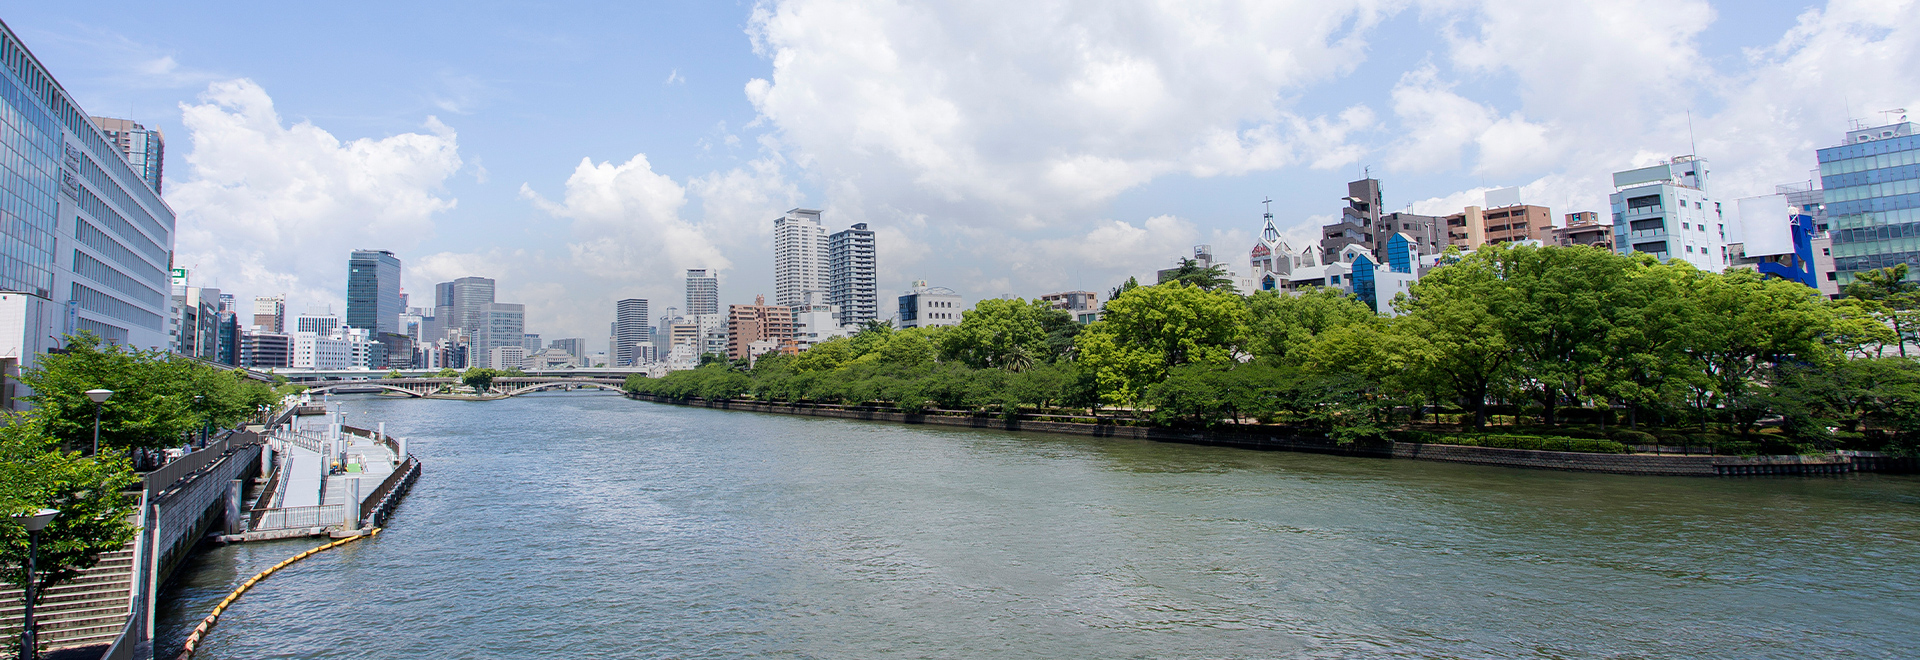 从淀屋桥站步行1分钟即可到达, 方便在大阪市内观光旅游